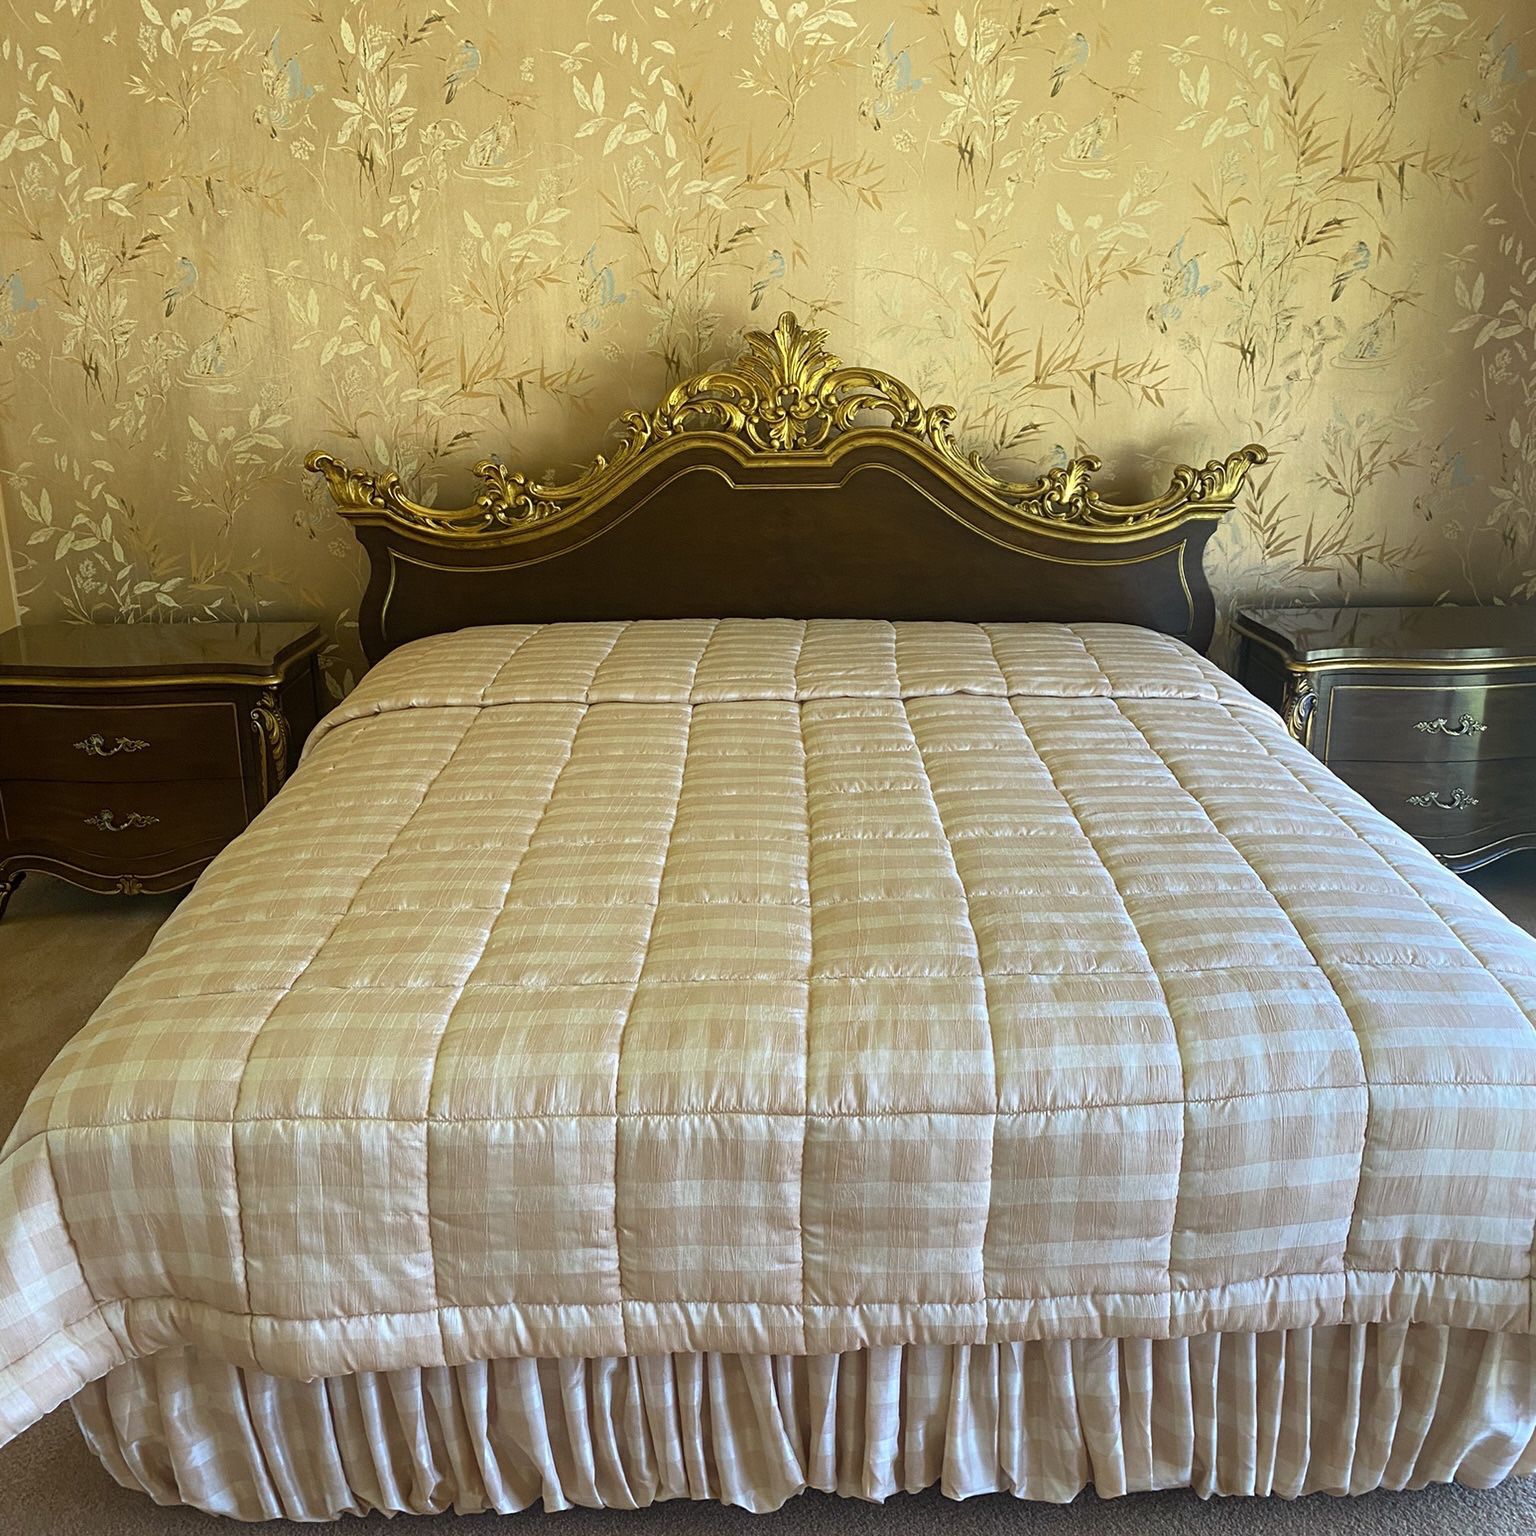 Karges French Provincial Bedroom Set